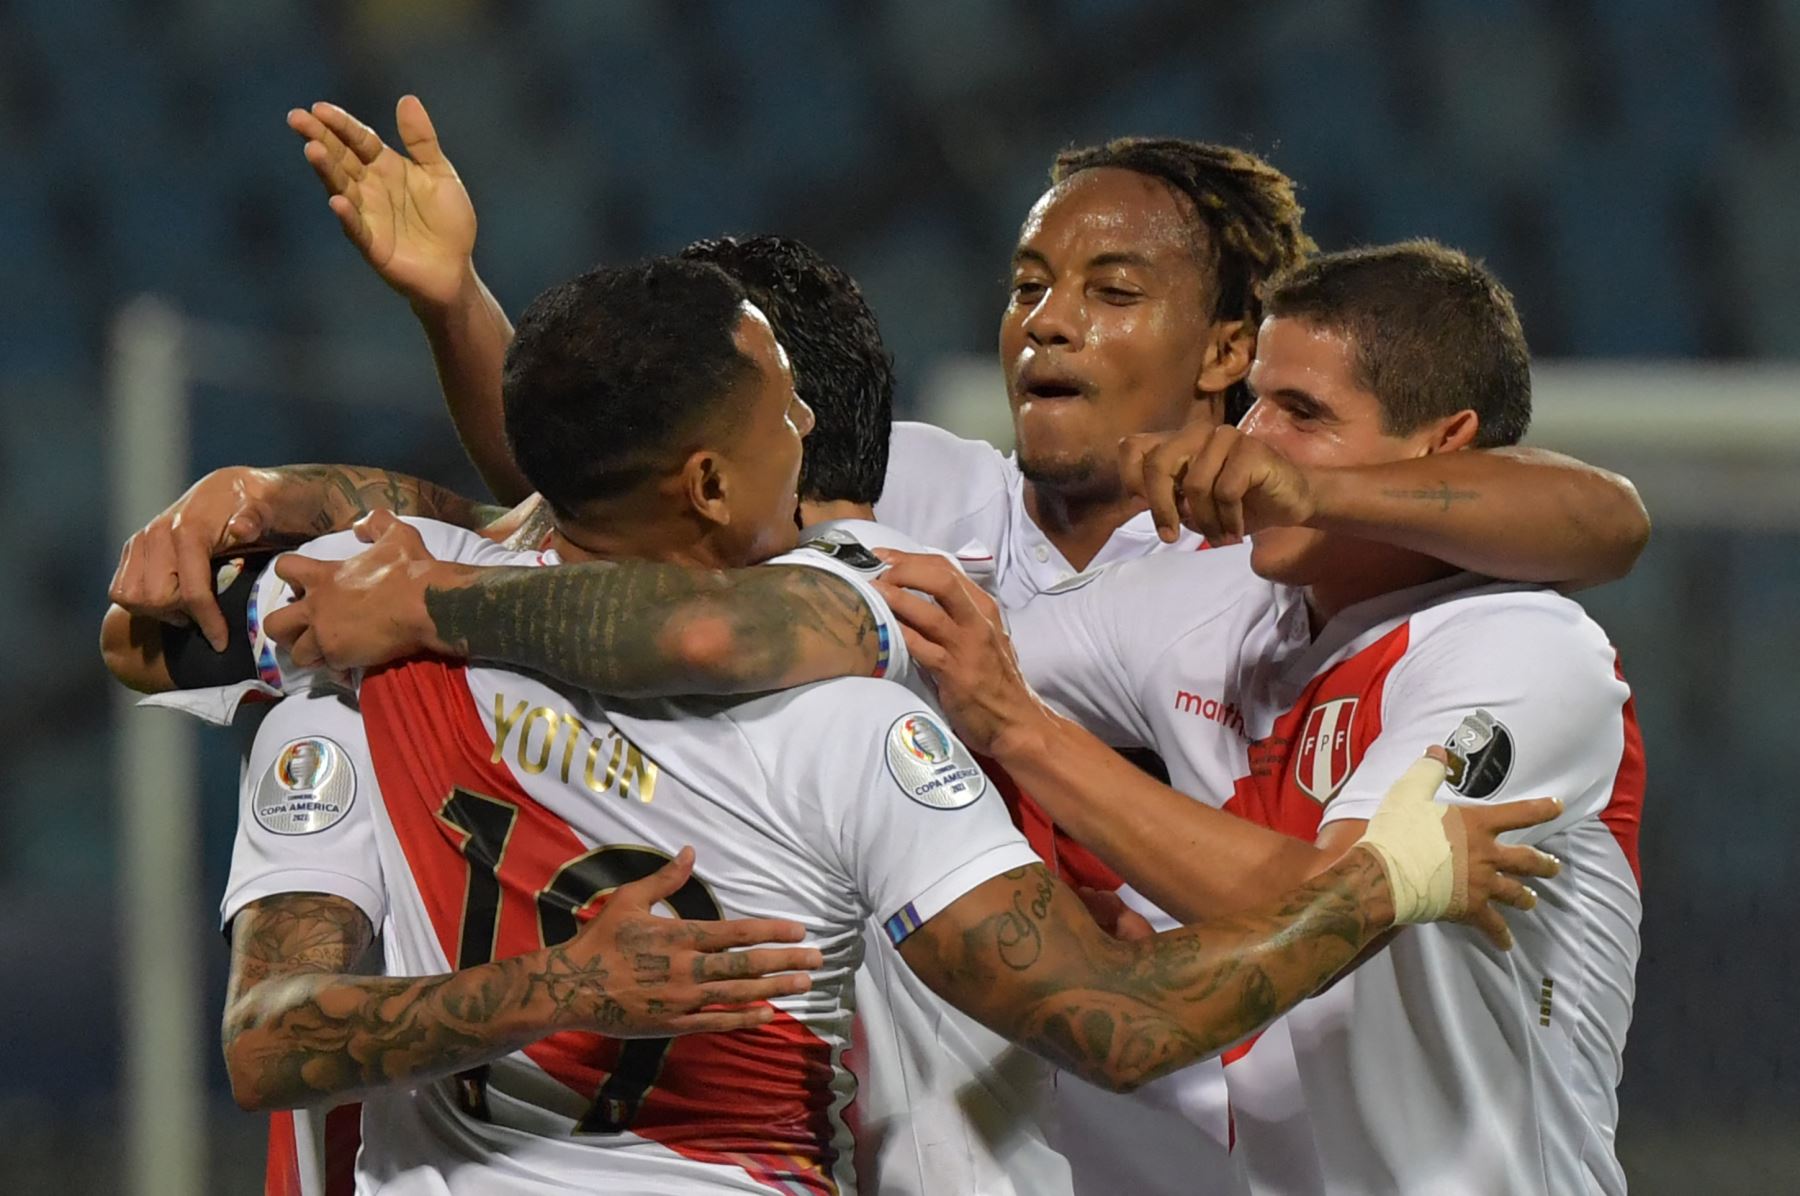 El peruano Sergio Peña (C) celebra con sus compañeros tras anotar contra Colombia durante el partido de la fase de grupos del torneo de fútbol Conmebol Copa América 2021 en el Estadio Olímpico de Goiania, Brasil. Foto: AFP